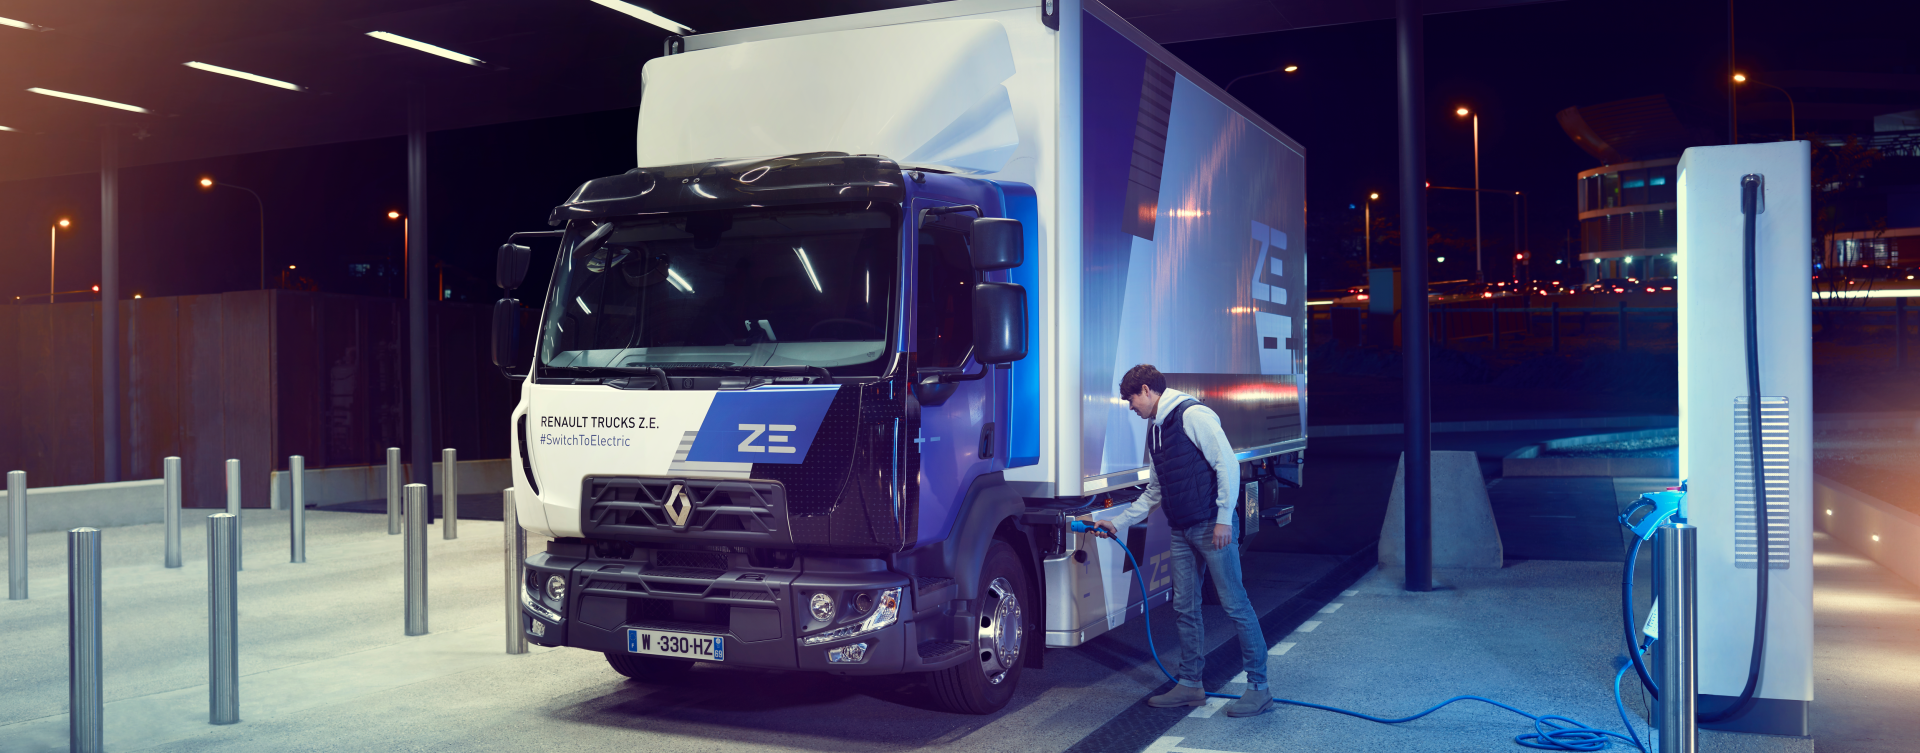 Bluekens-truck-en-bus-Renault-D-ZE-opladen